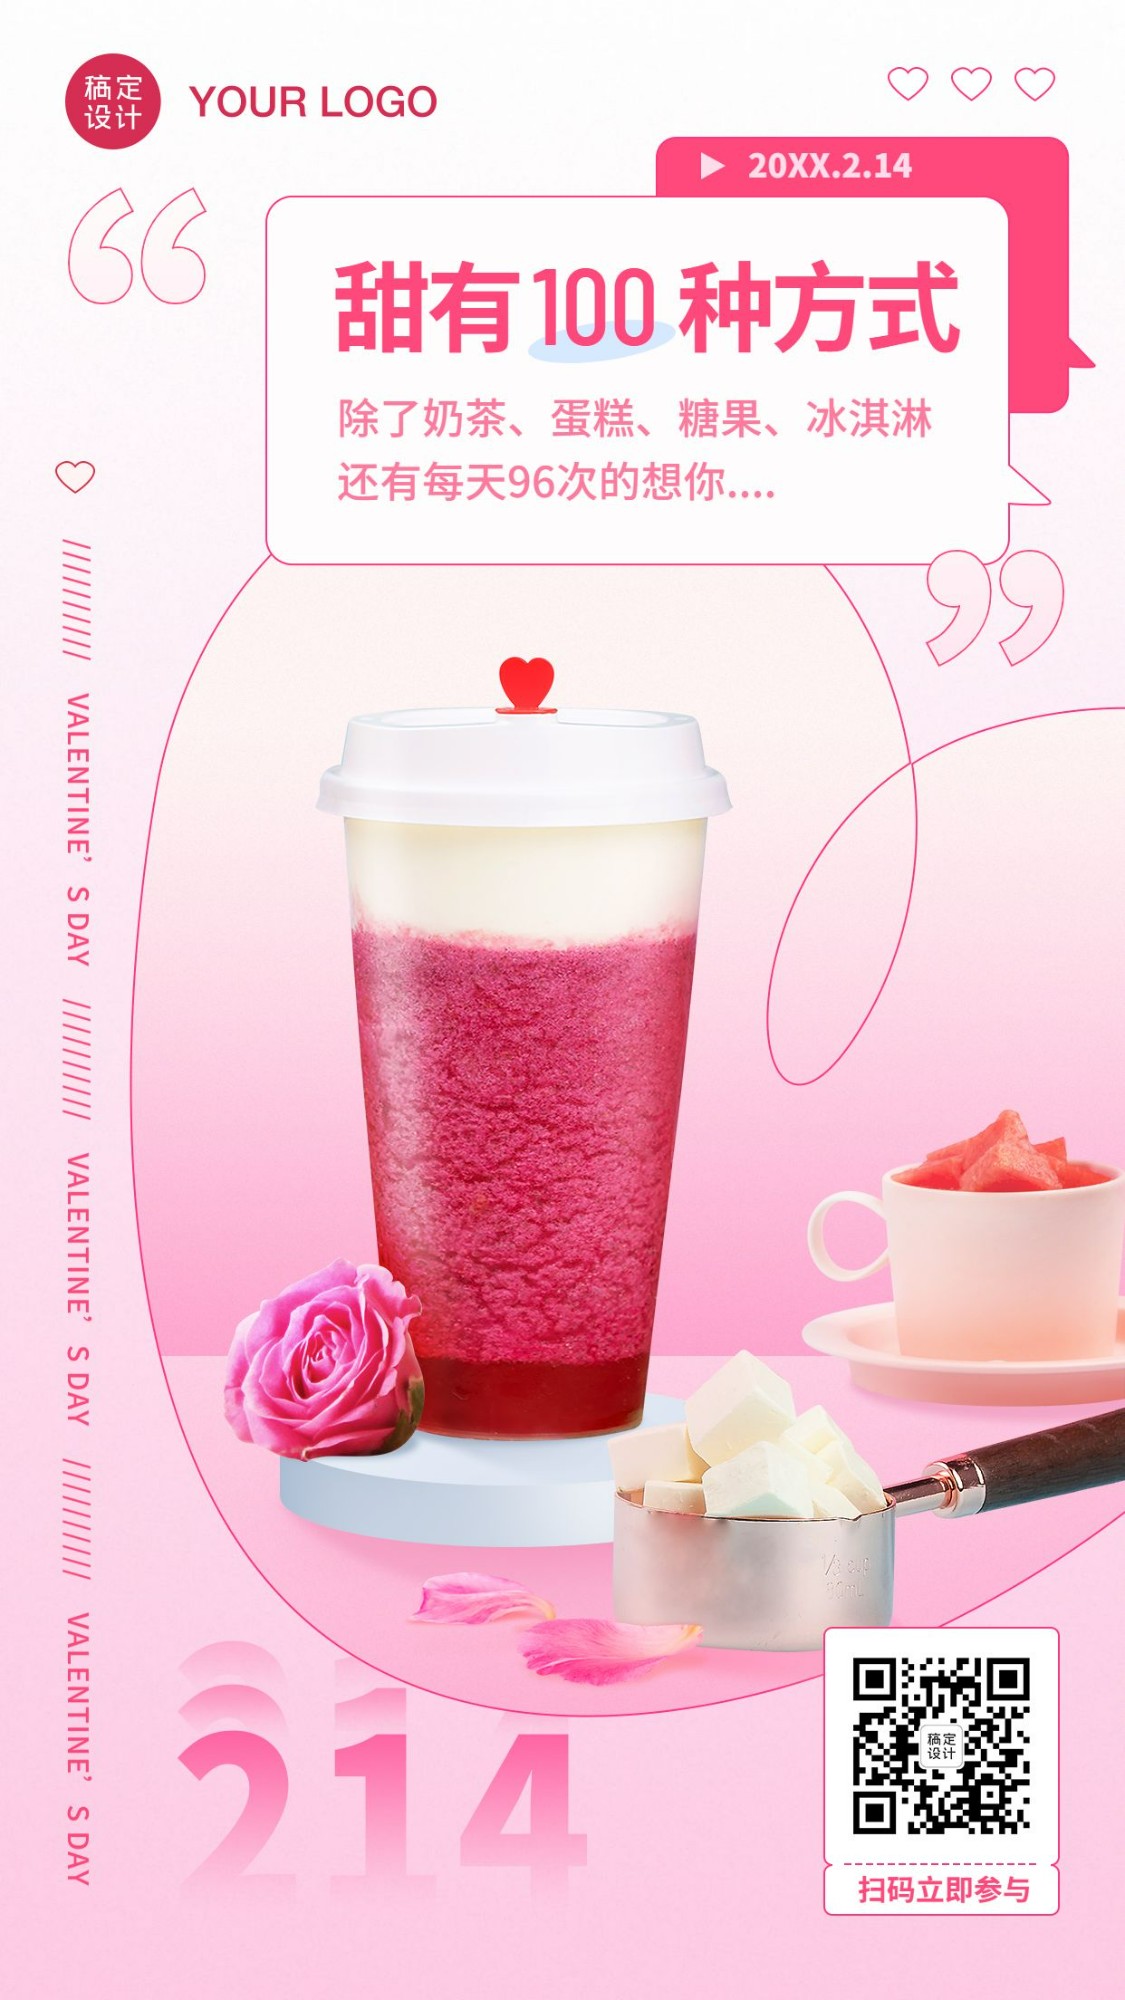 2.14情人节奶茶饮品节日营销实景海报预览效果